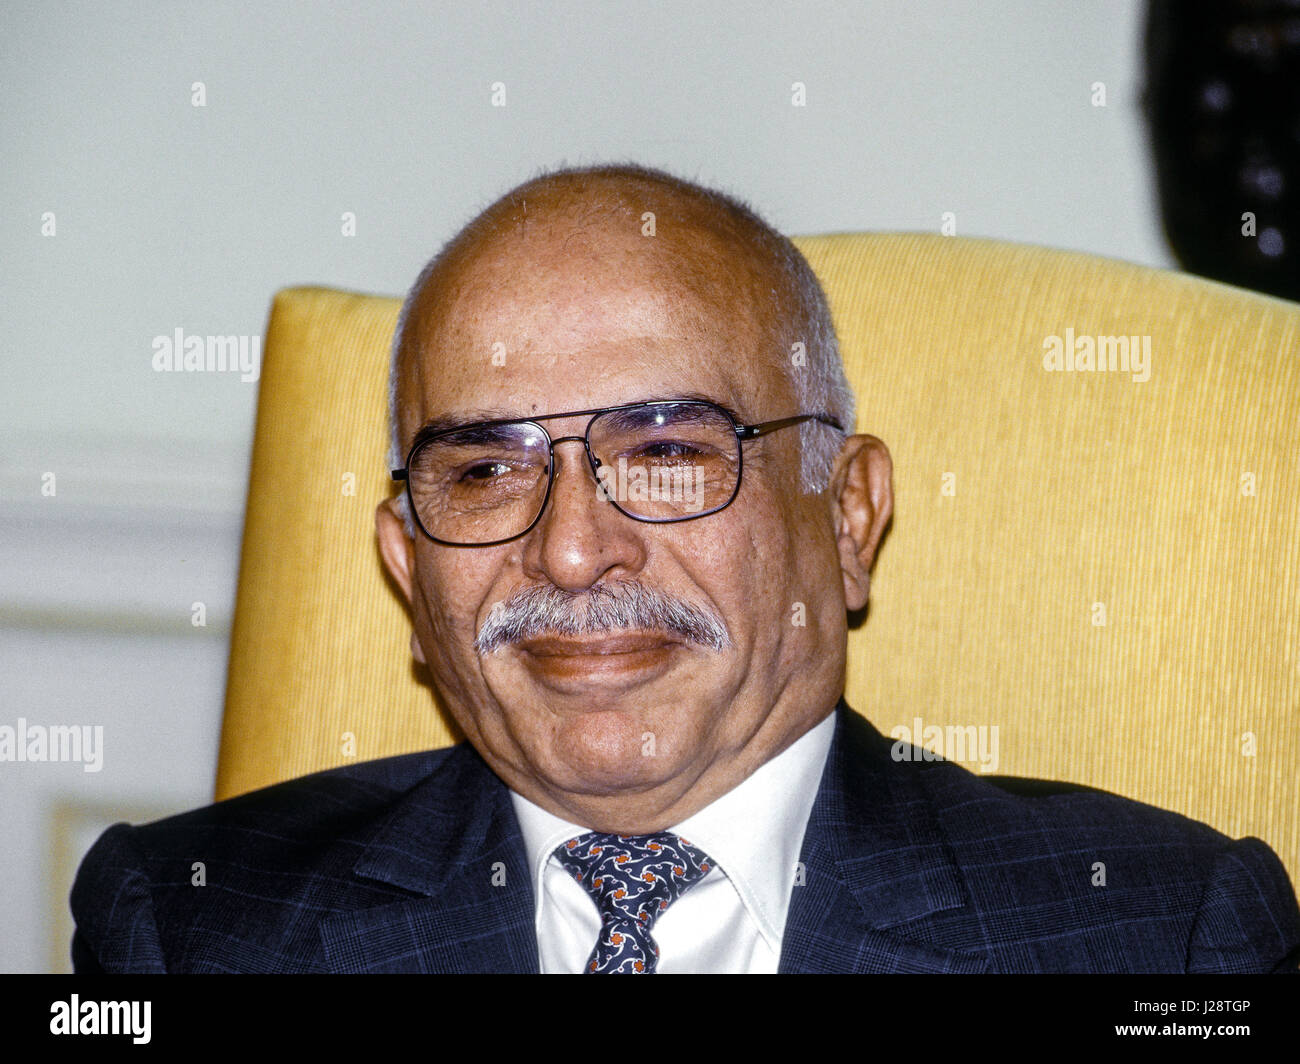 Le roi Hussein bin Talal de Jordanie est assis dans le bureau ovale de la Maison blanche au cours d'une séance de photo avant de Cisjordanie cérémonie de signature des Accords de paix, Washington DC., le 28 septembre 1995. Photo par Mark Reinstein Banque D'Images